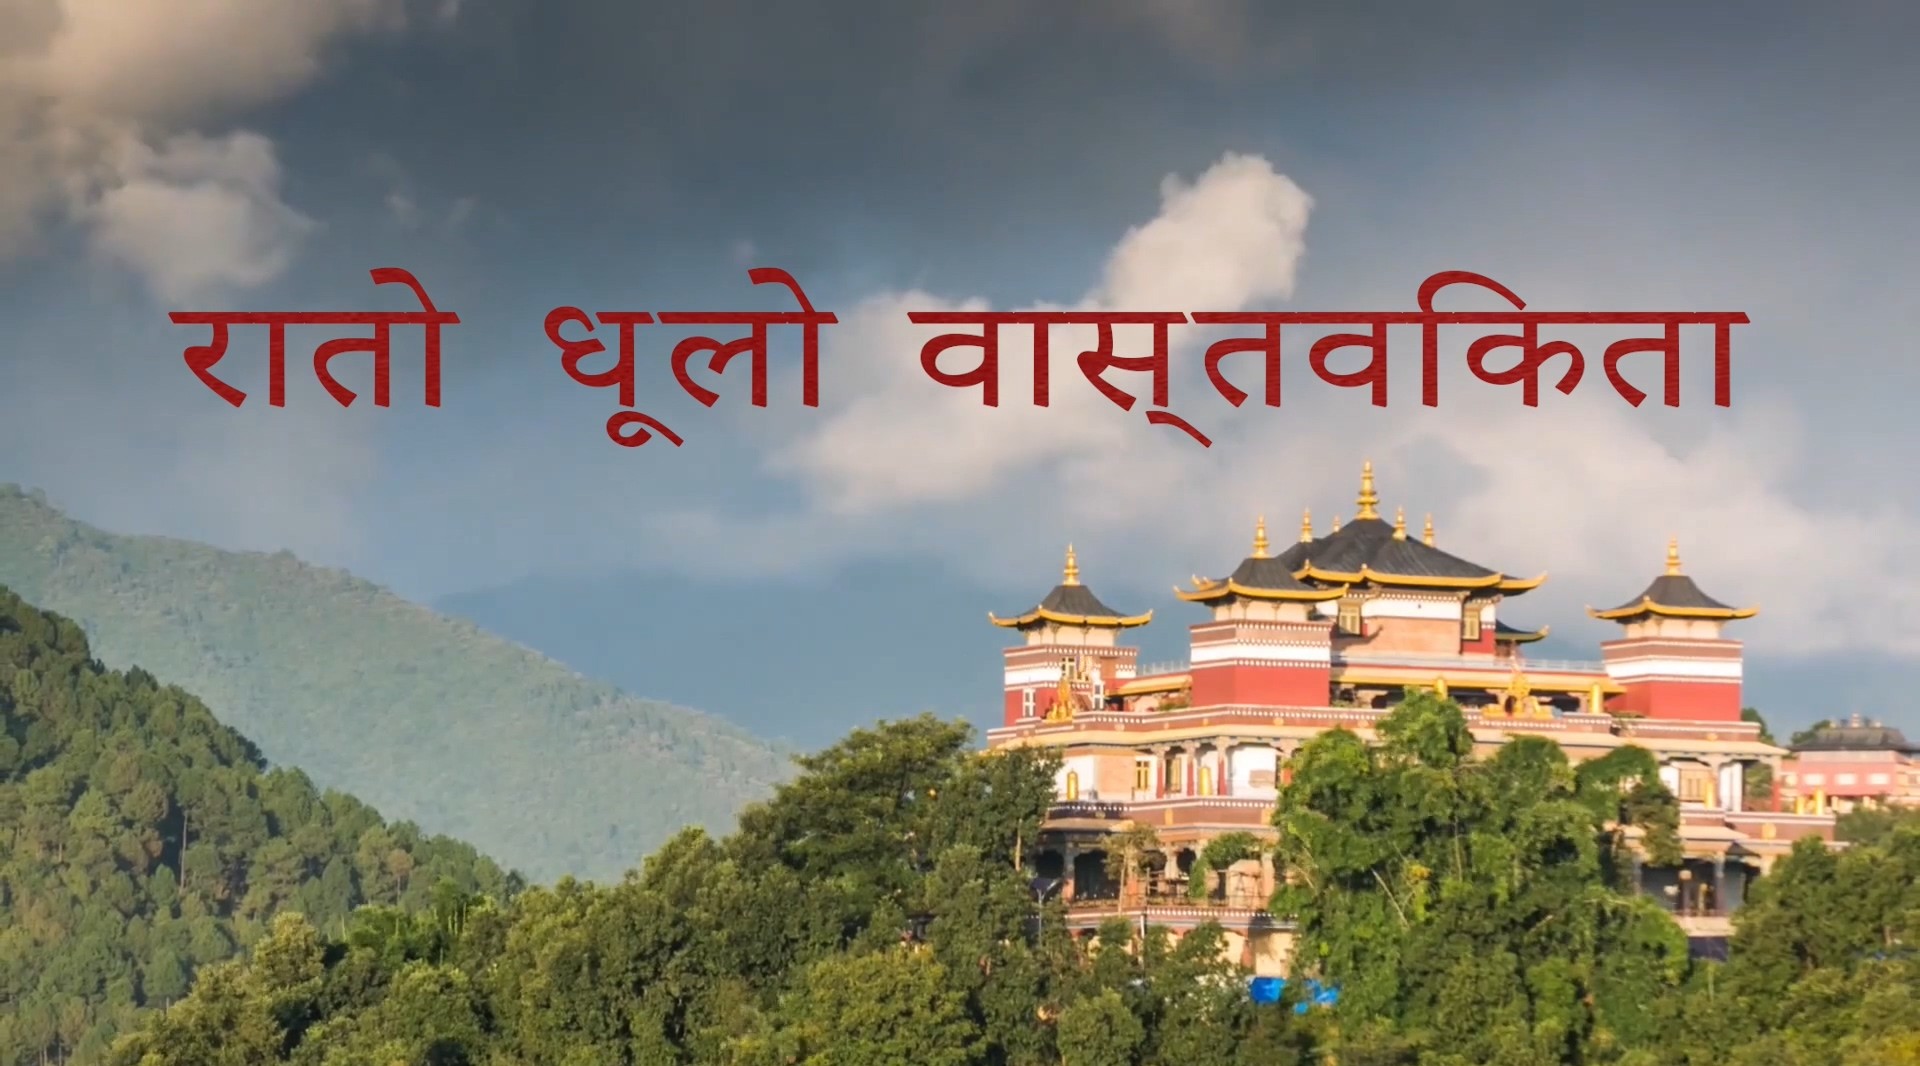 尼泊尔红尘实相宣传片 